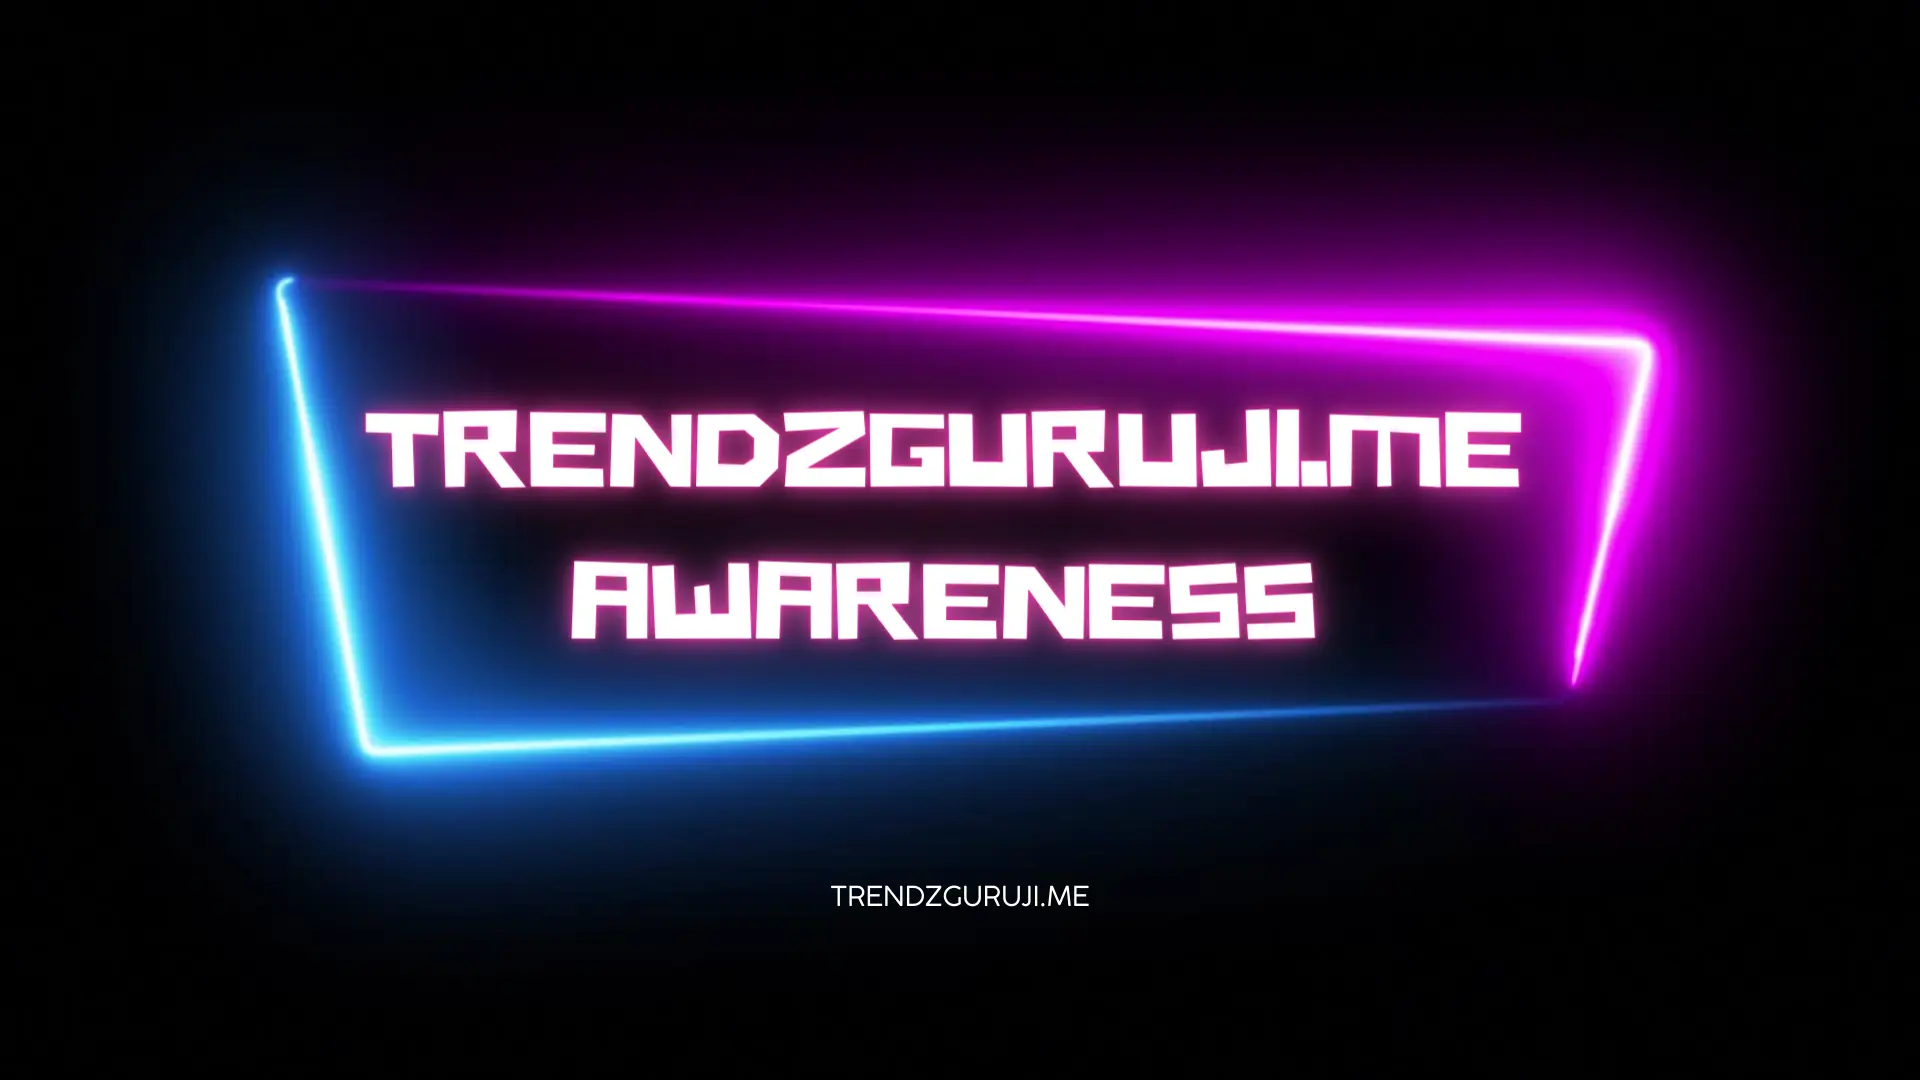 Trendzguruji.me Awareness